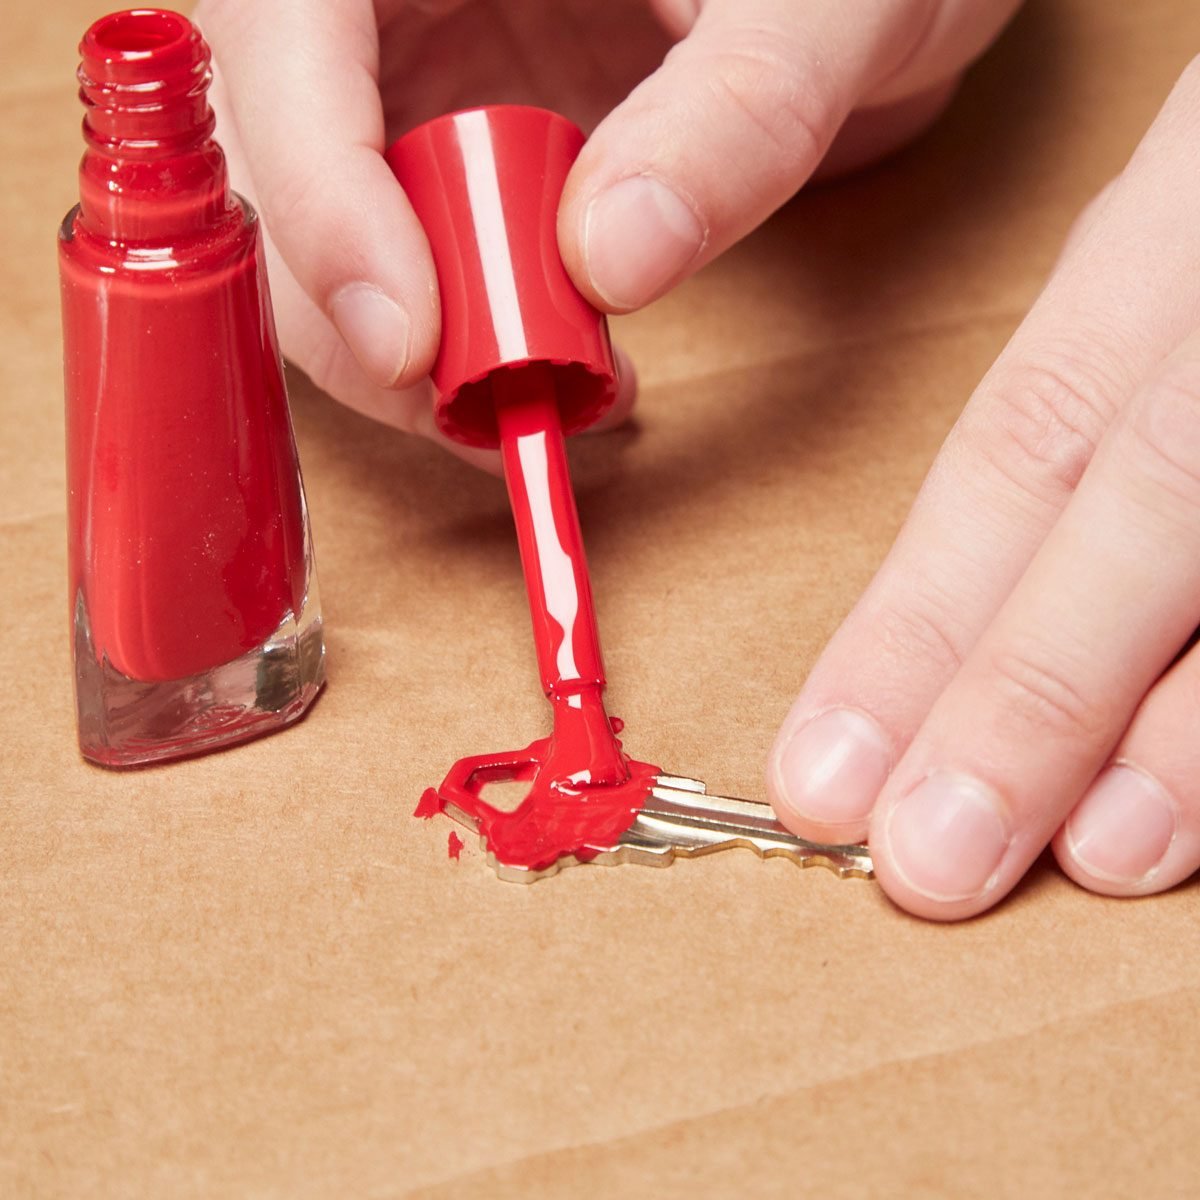 10 Great Uses For Nail Polish And Nail Polish Remover Family